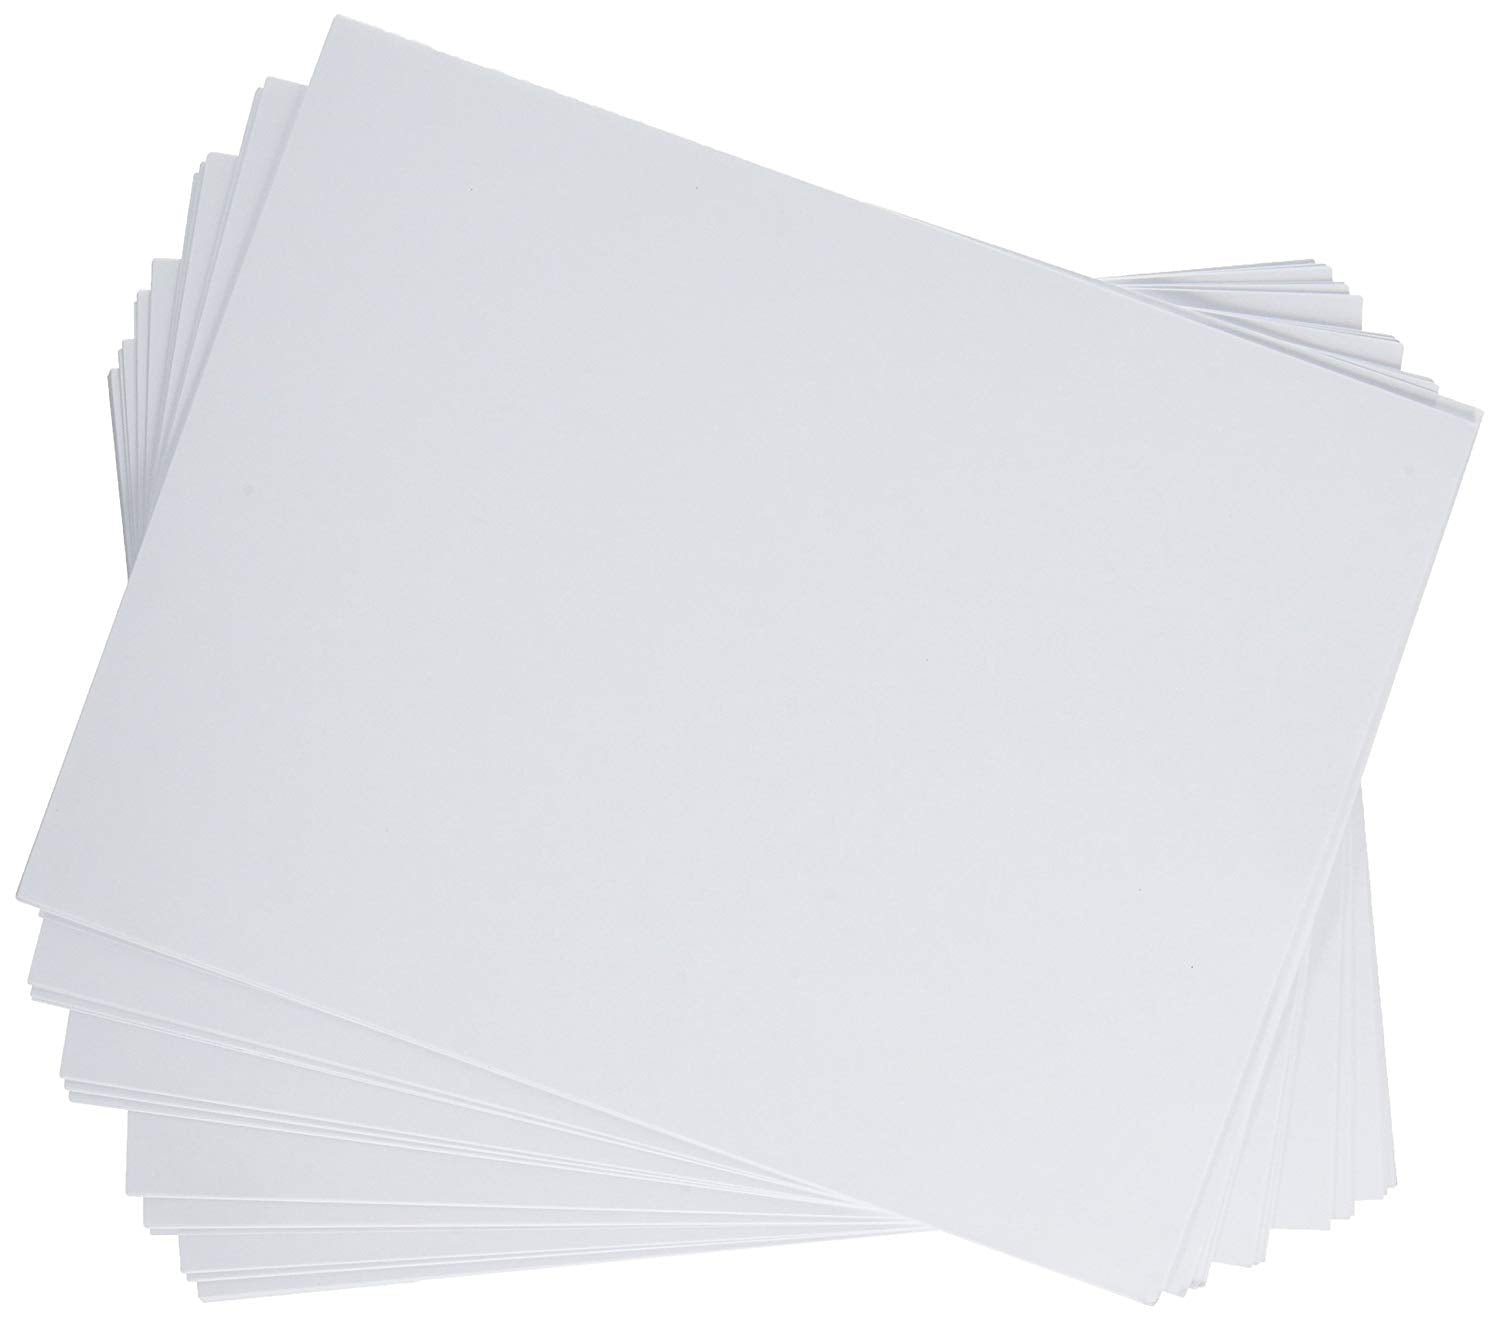 Standard Copy / Computer Paper – 500 Sheets